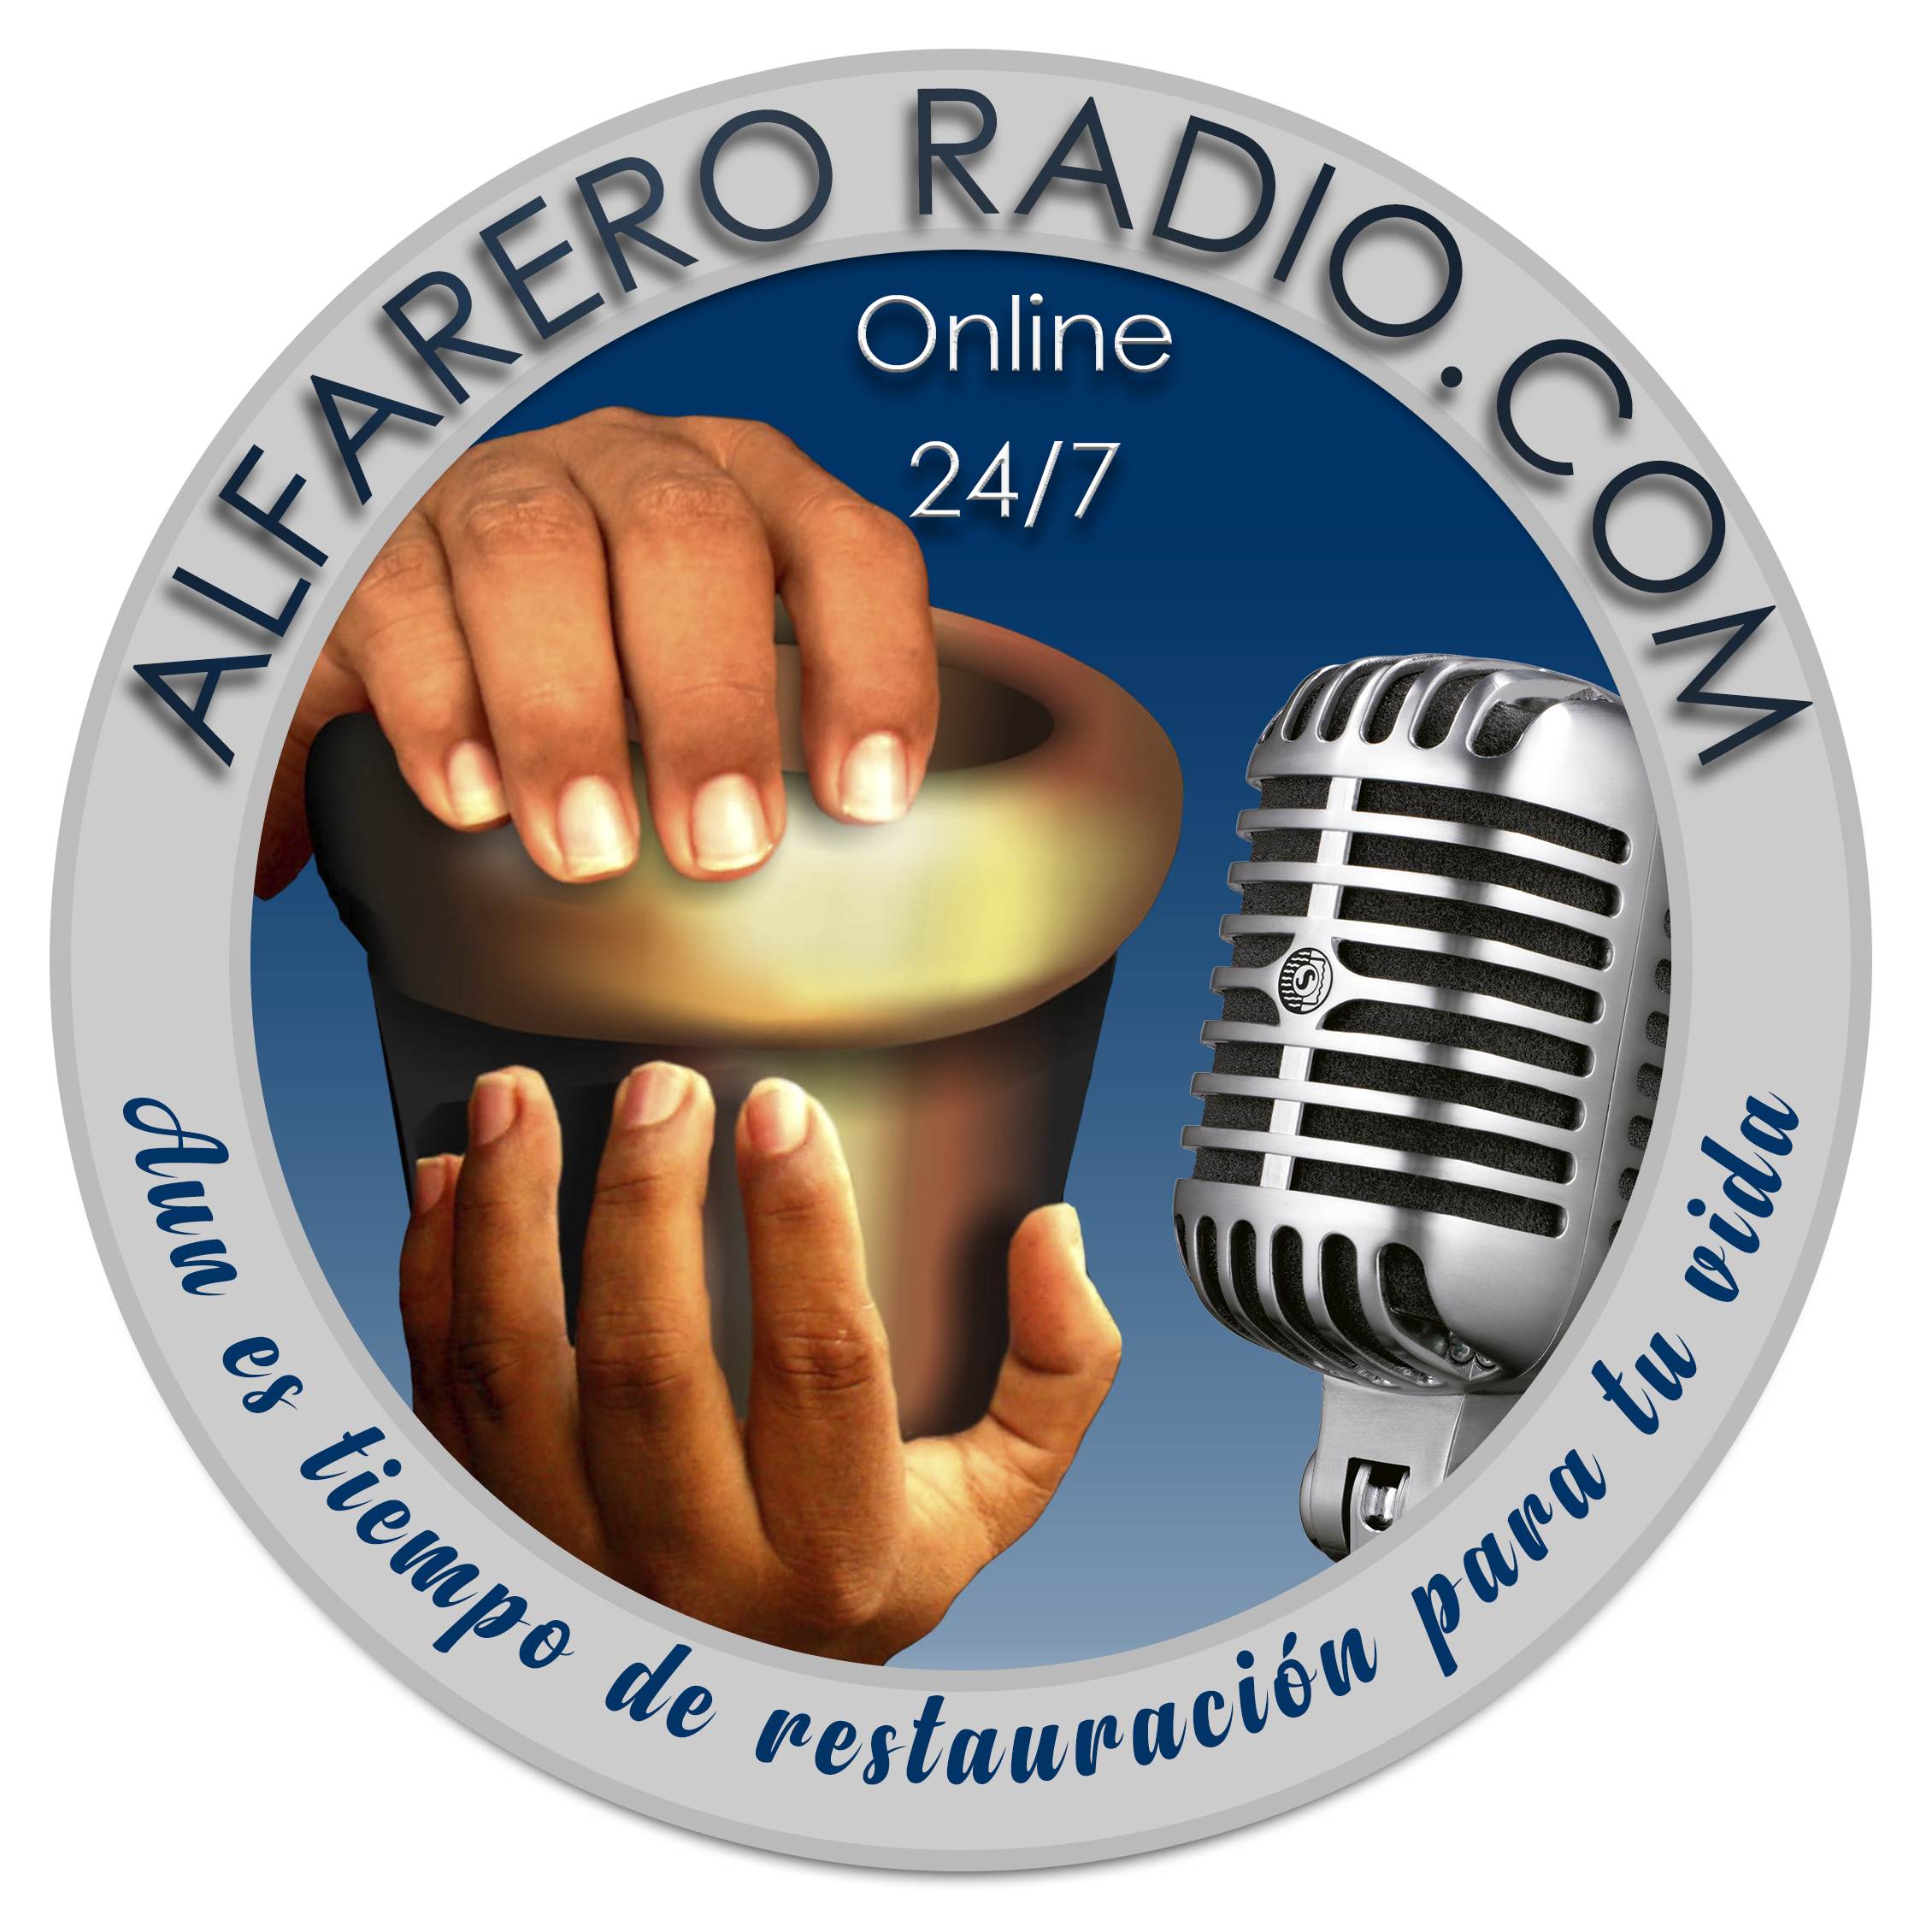 Bienvenidos a Alfarero Radio HD!